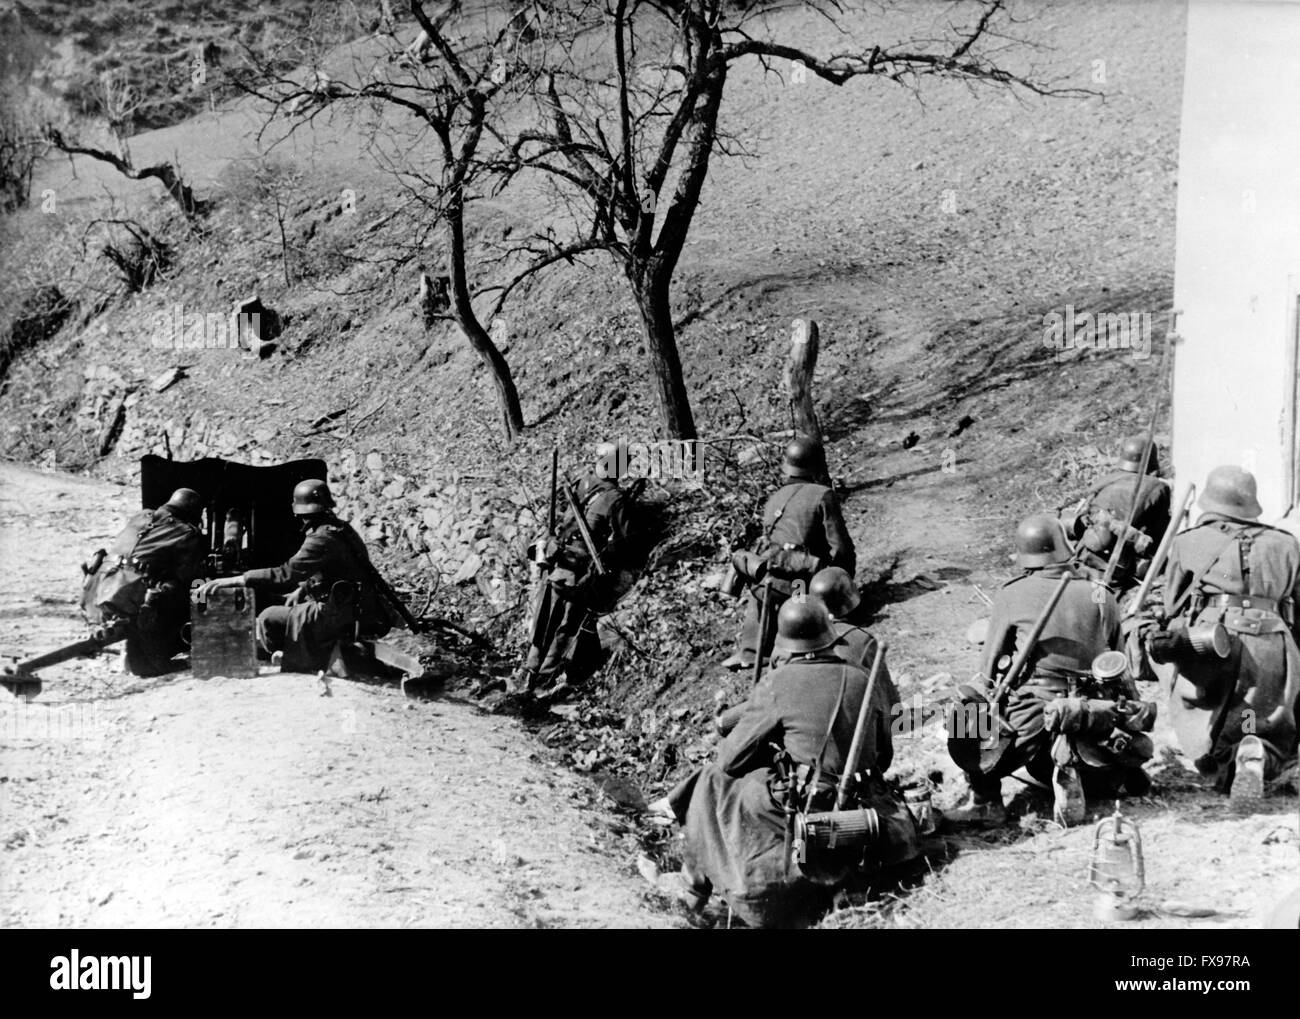 Le tableau de la propagande nazie montre des membres du Waffen-SS pendant le combat partisan en Yougoslavie en juin 1943. Fotoarchiv für Zeitgeschichtee NO SERVICE DE FIL - Banque D'Images